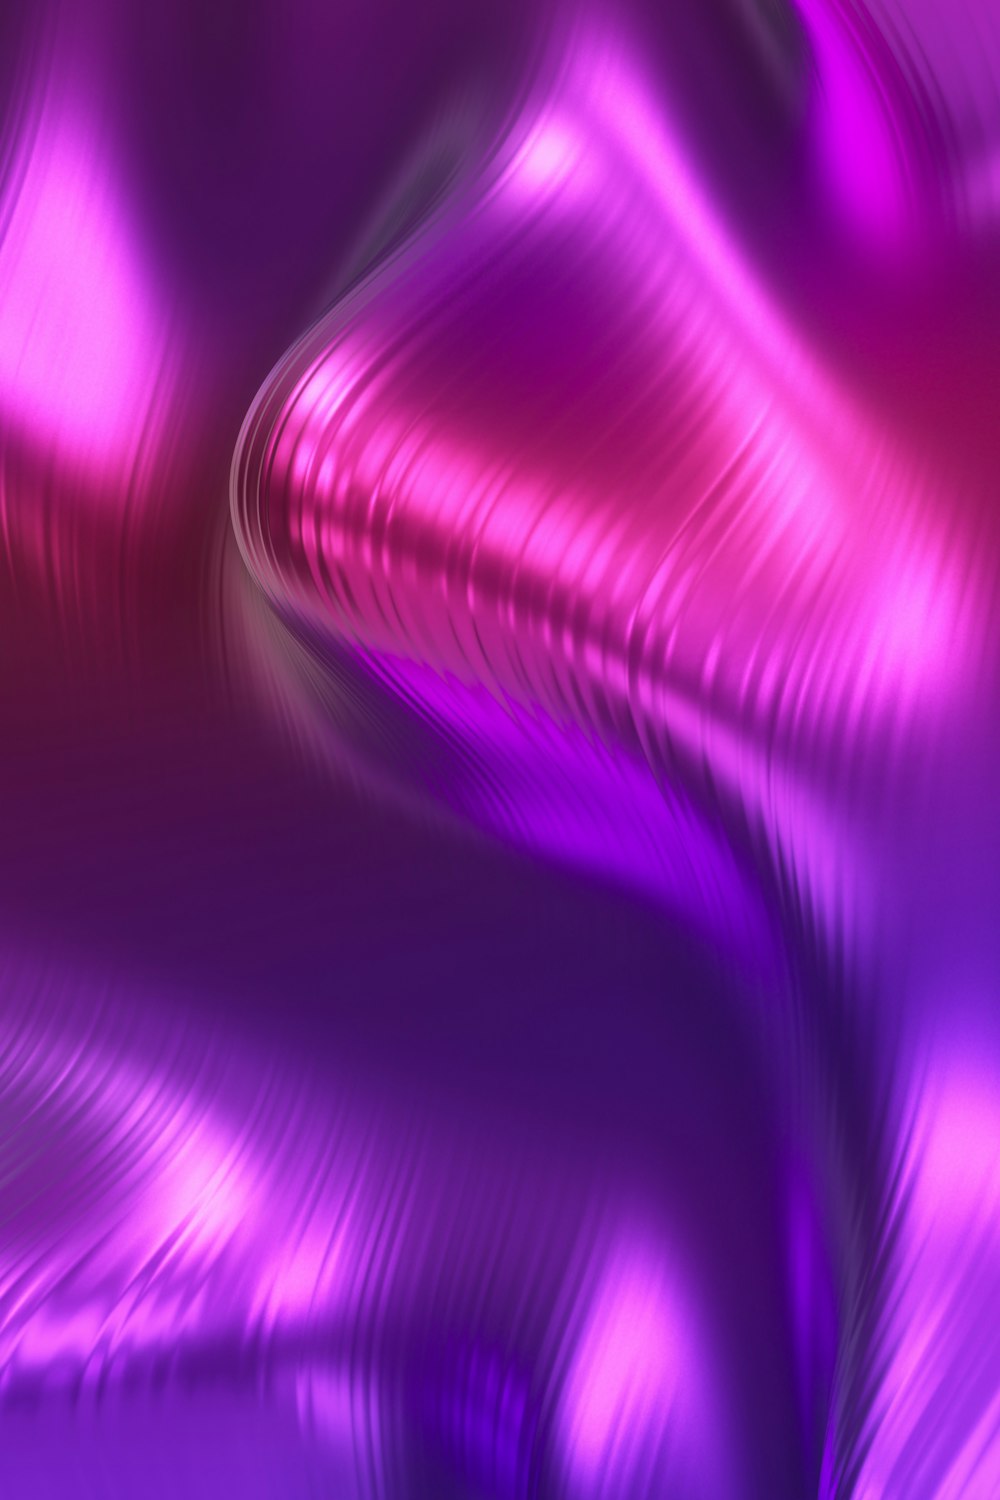 Hình nền tím hồng với họa tiết sóng sẽ đưa bạn vào một không gian tươi sáng, vui tươi. Tông màu tím hồng tươi sáng kết hợp với họa tiết sóng độc đáo, tạo nên một không gian tràn đầy năng lượng và tích cực. Hãy bấm vào hình ảnh để khám phá và thưởng thức chiếc hình nền đẹp này nhé!